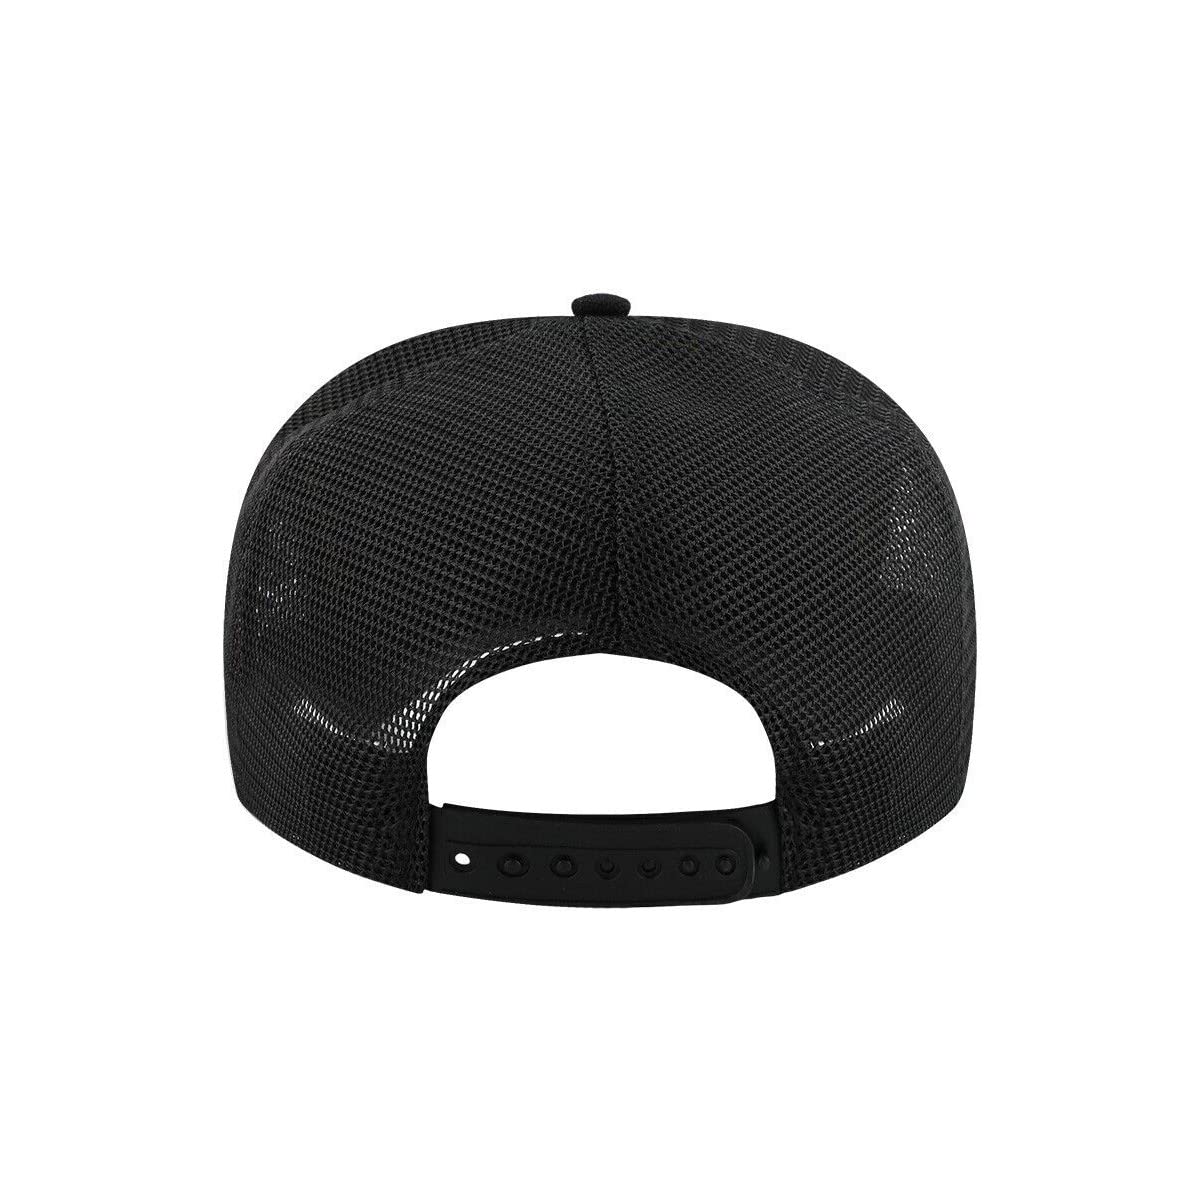 Tupac Shakur Official Mesh Back Trucker Hat